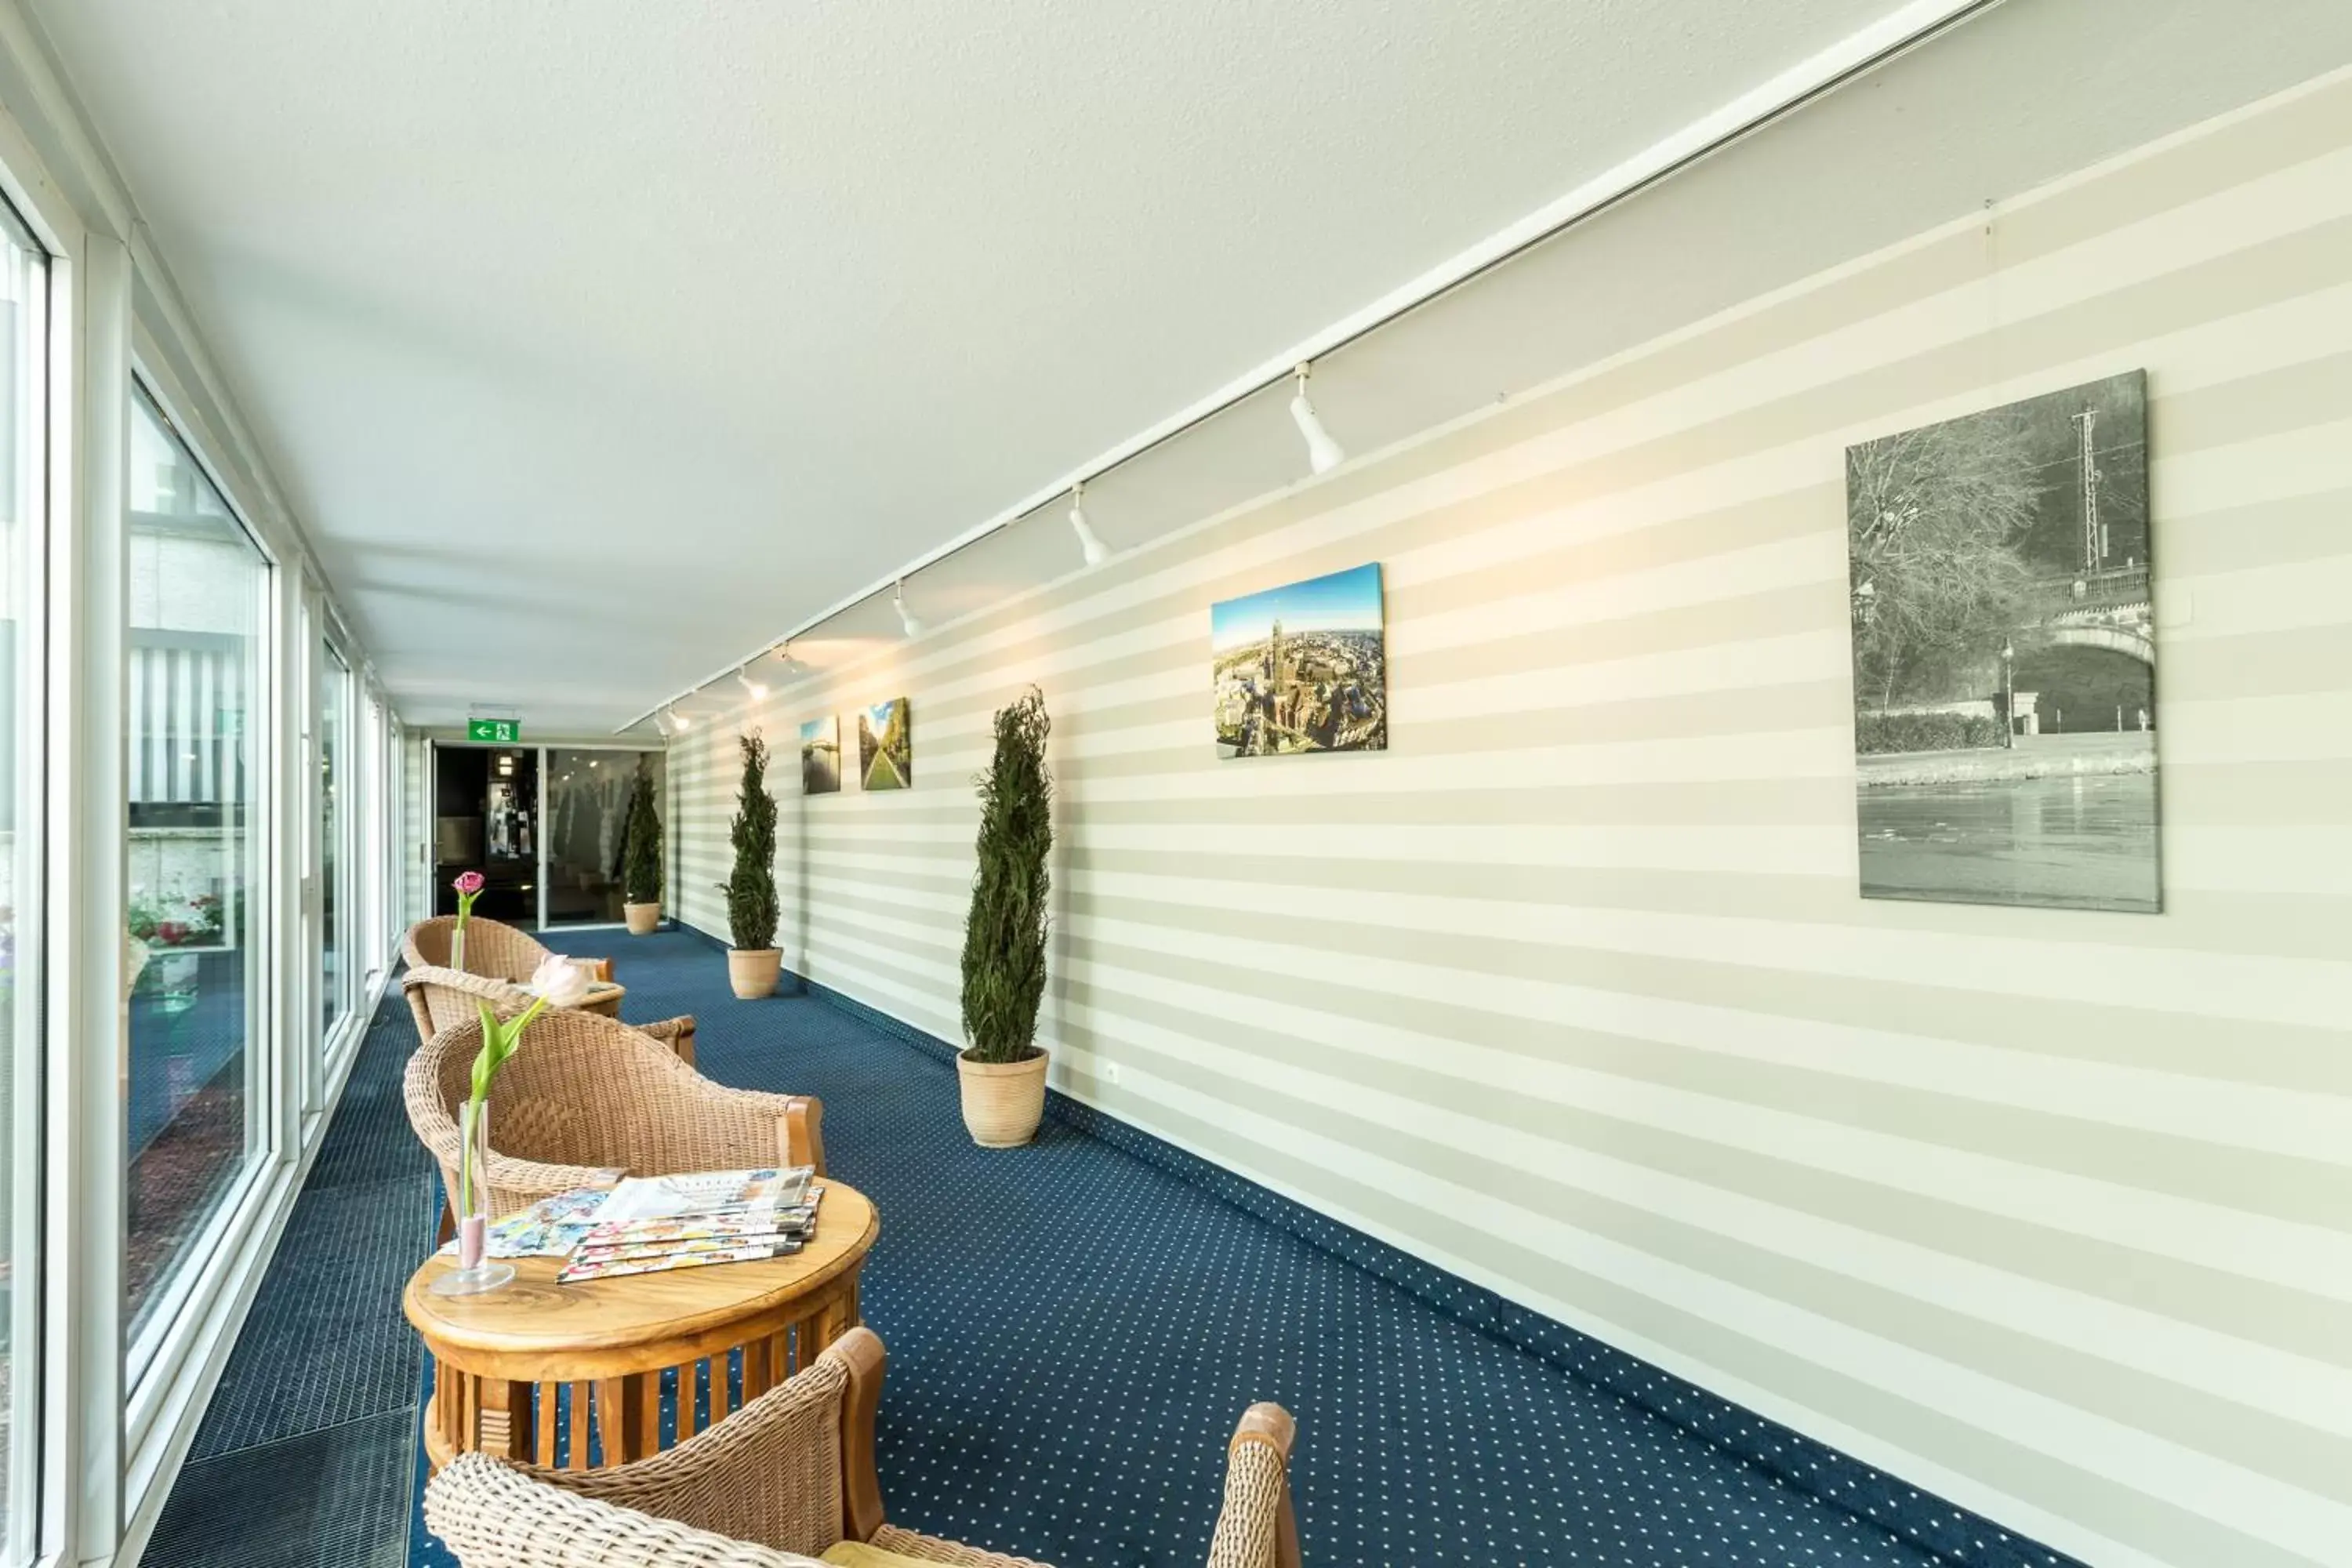 Lobby or reception in Relexa Hotel Bellevue an der Alster